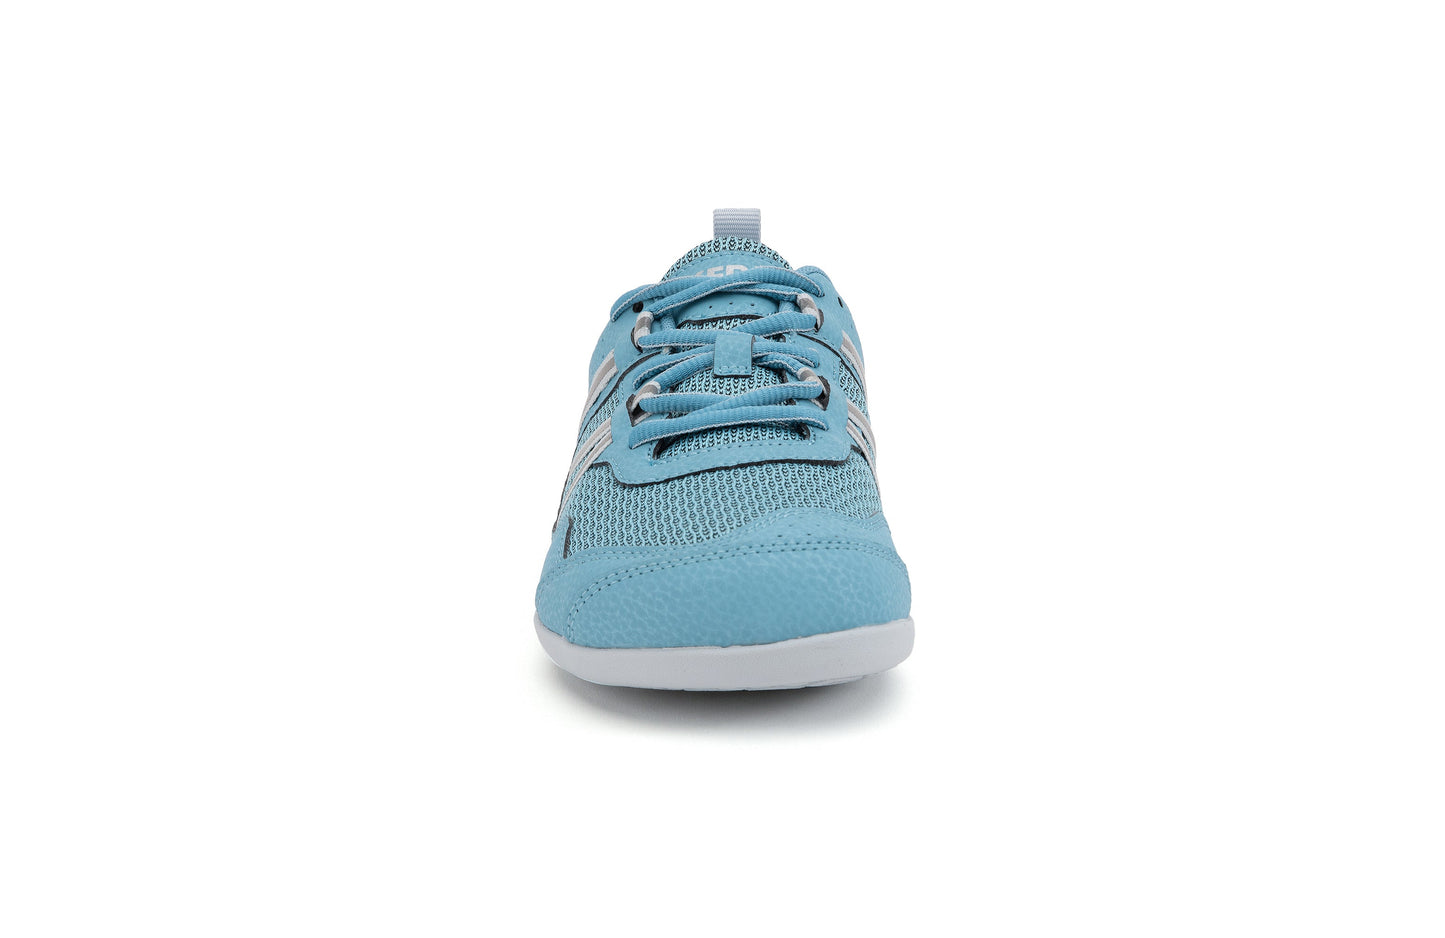 Mærkbare Prio Womens barfods sneakers til kvinder i farven delphinium blue, forfra